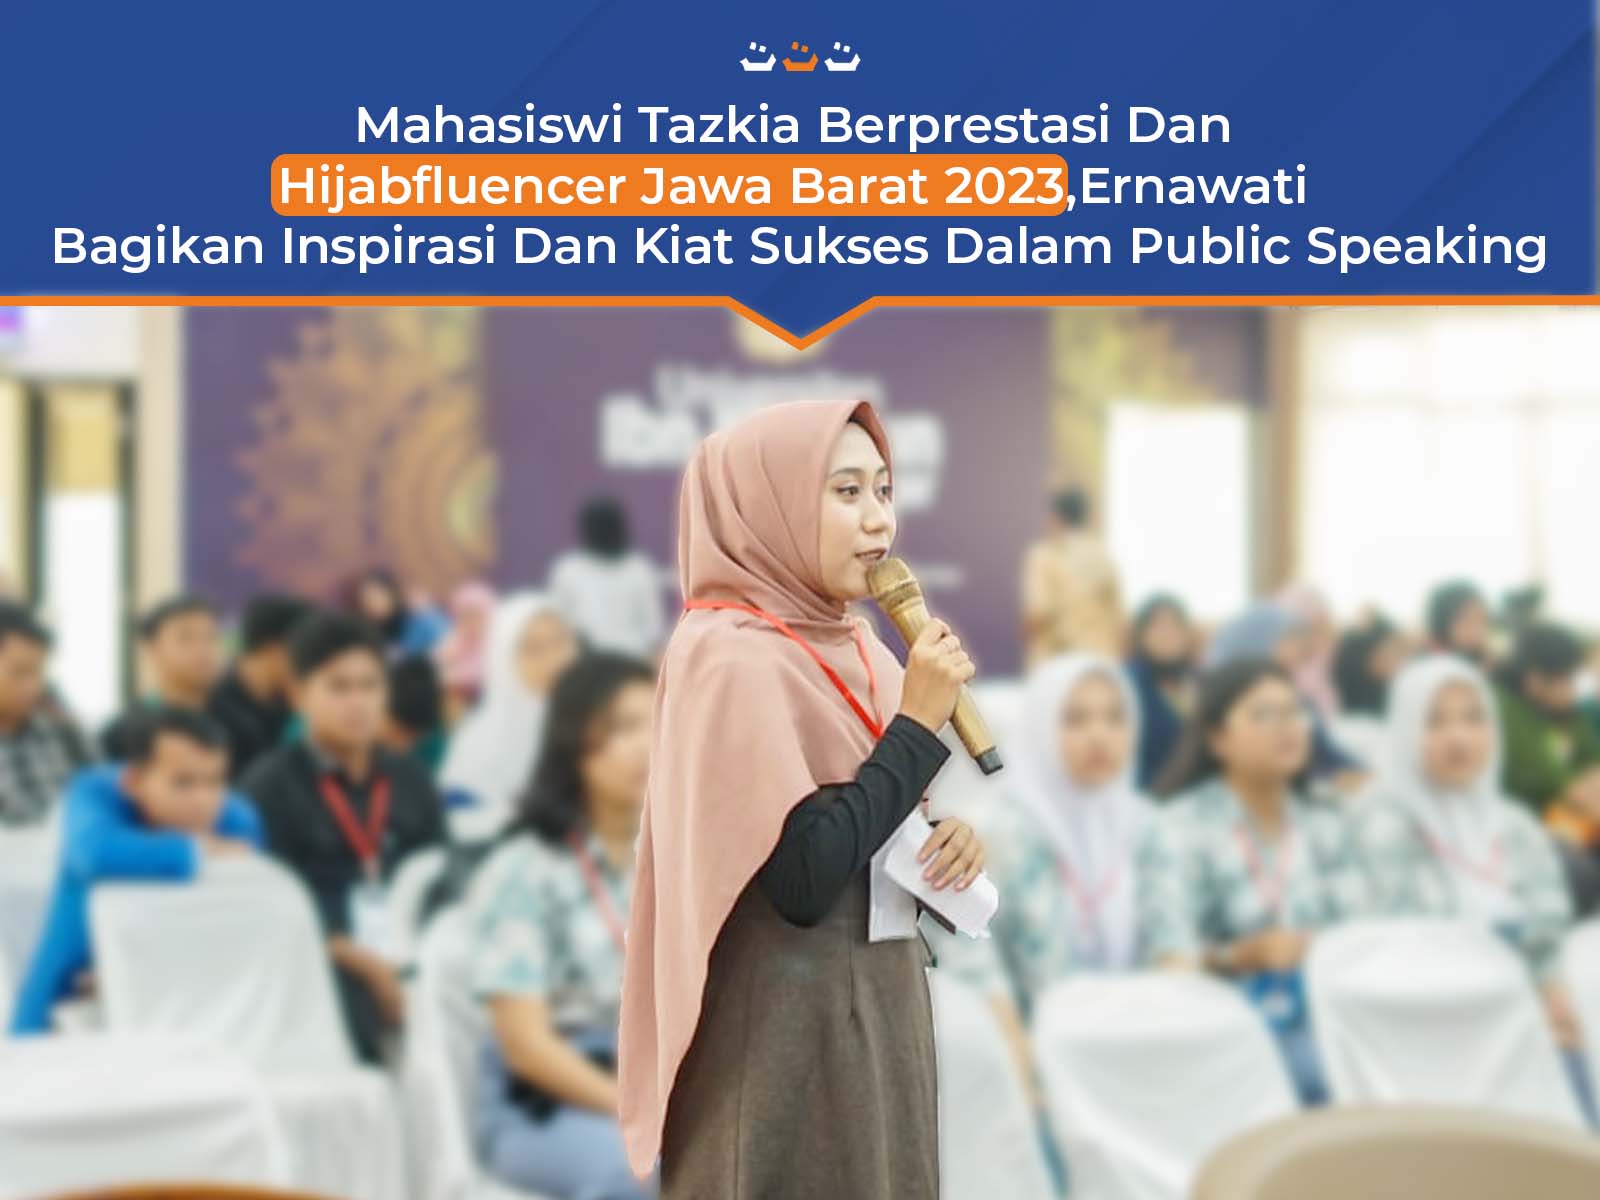 Mahasiswi Tazkia Berprestasi Dan Hijabfluencer Jawa Barat 2023,Ernawati Bagikan Inspirasi Dan Kiat Sukses Dalam Public Speaking